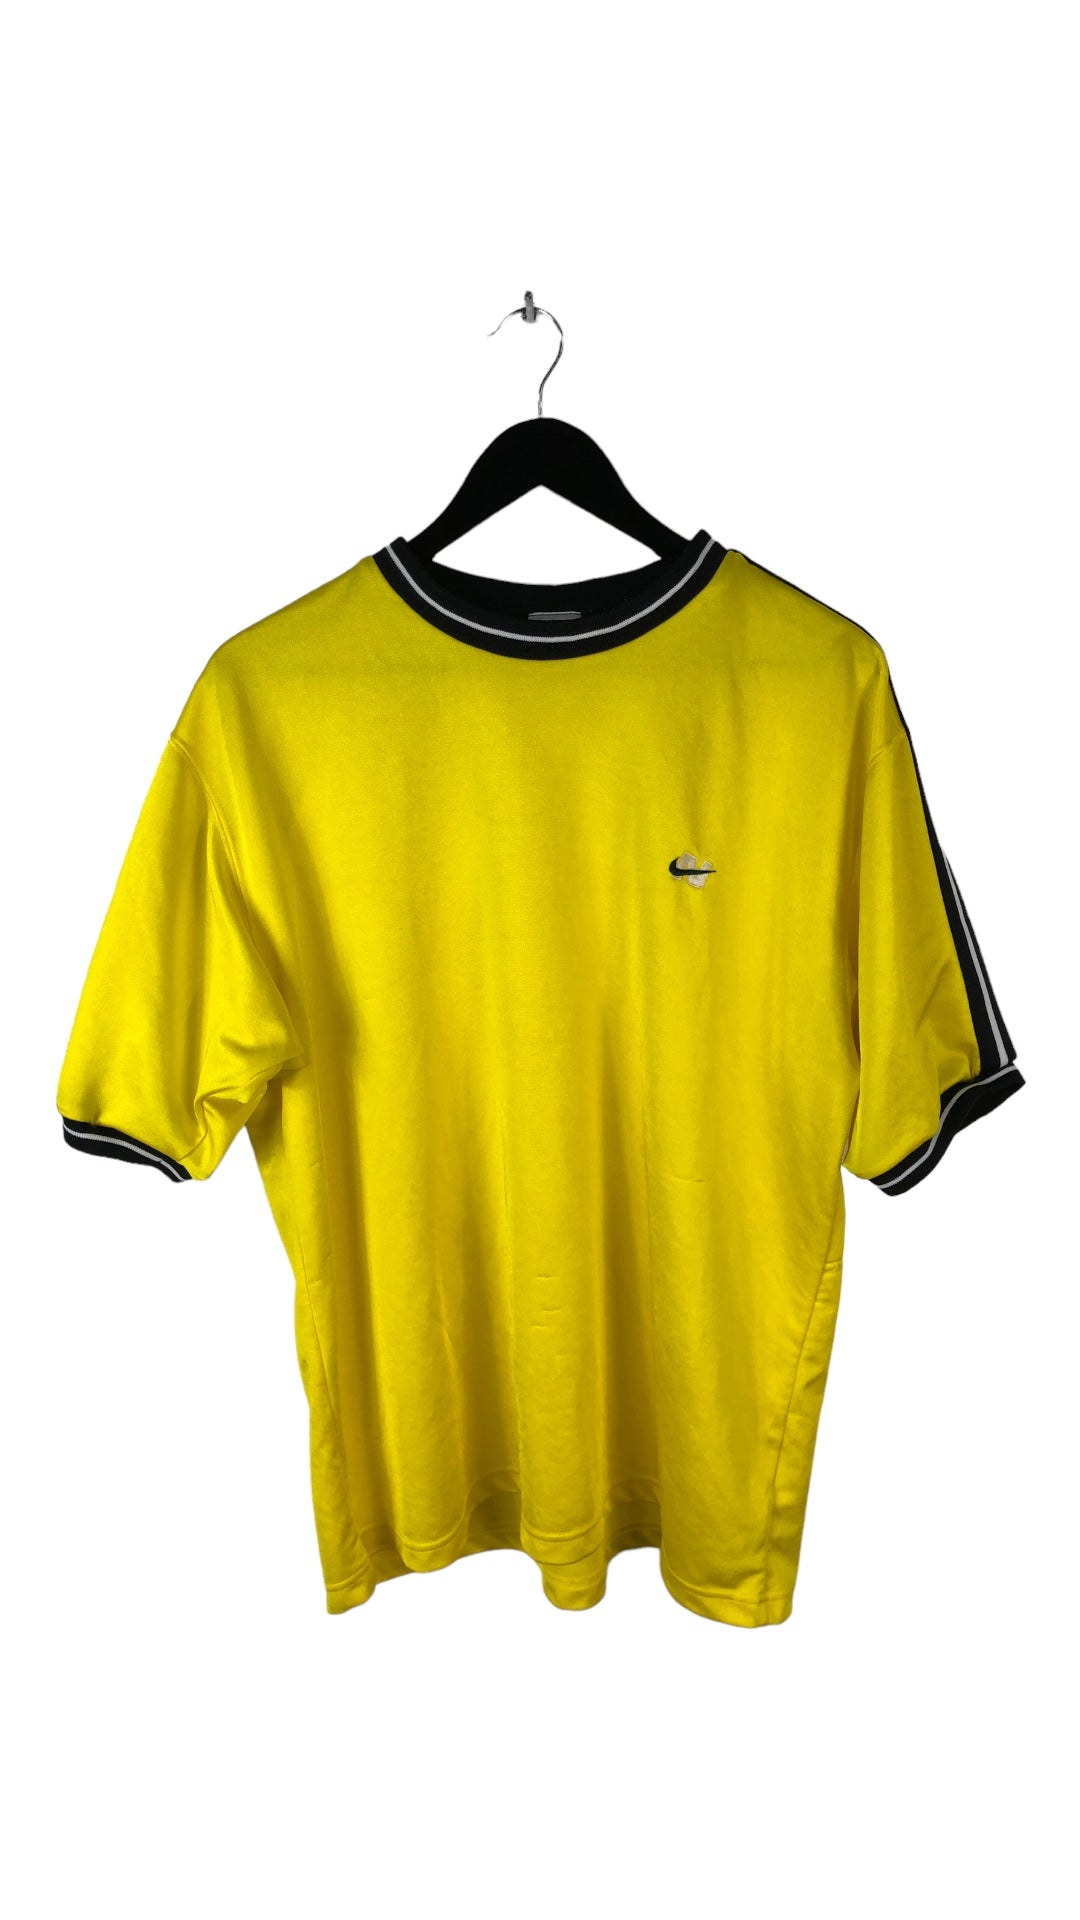 VTG Nike N Logo Yellow Jersey Sz L/XL